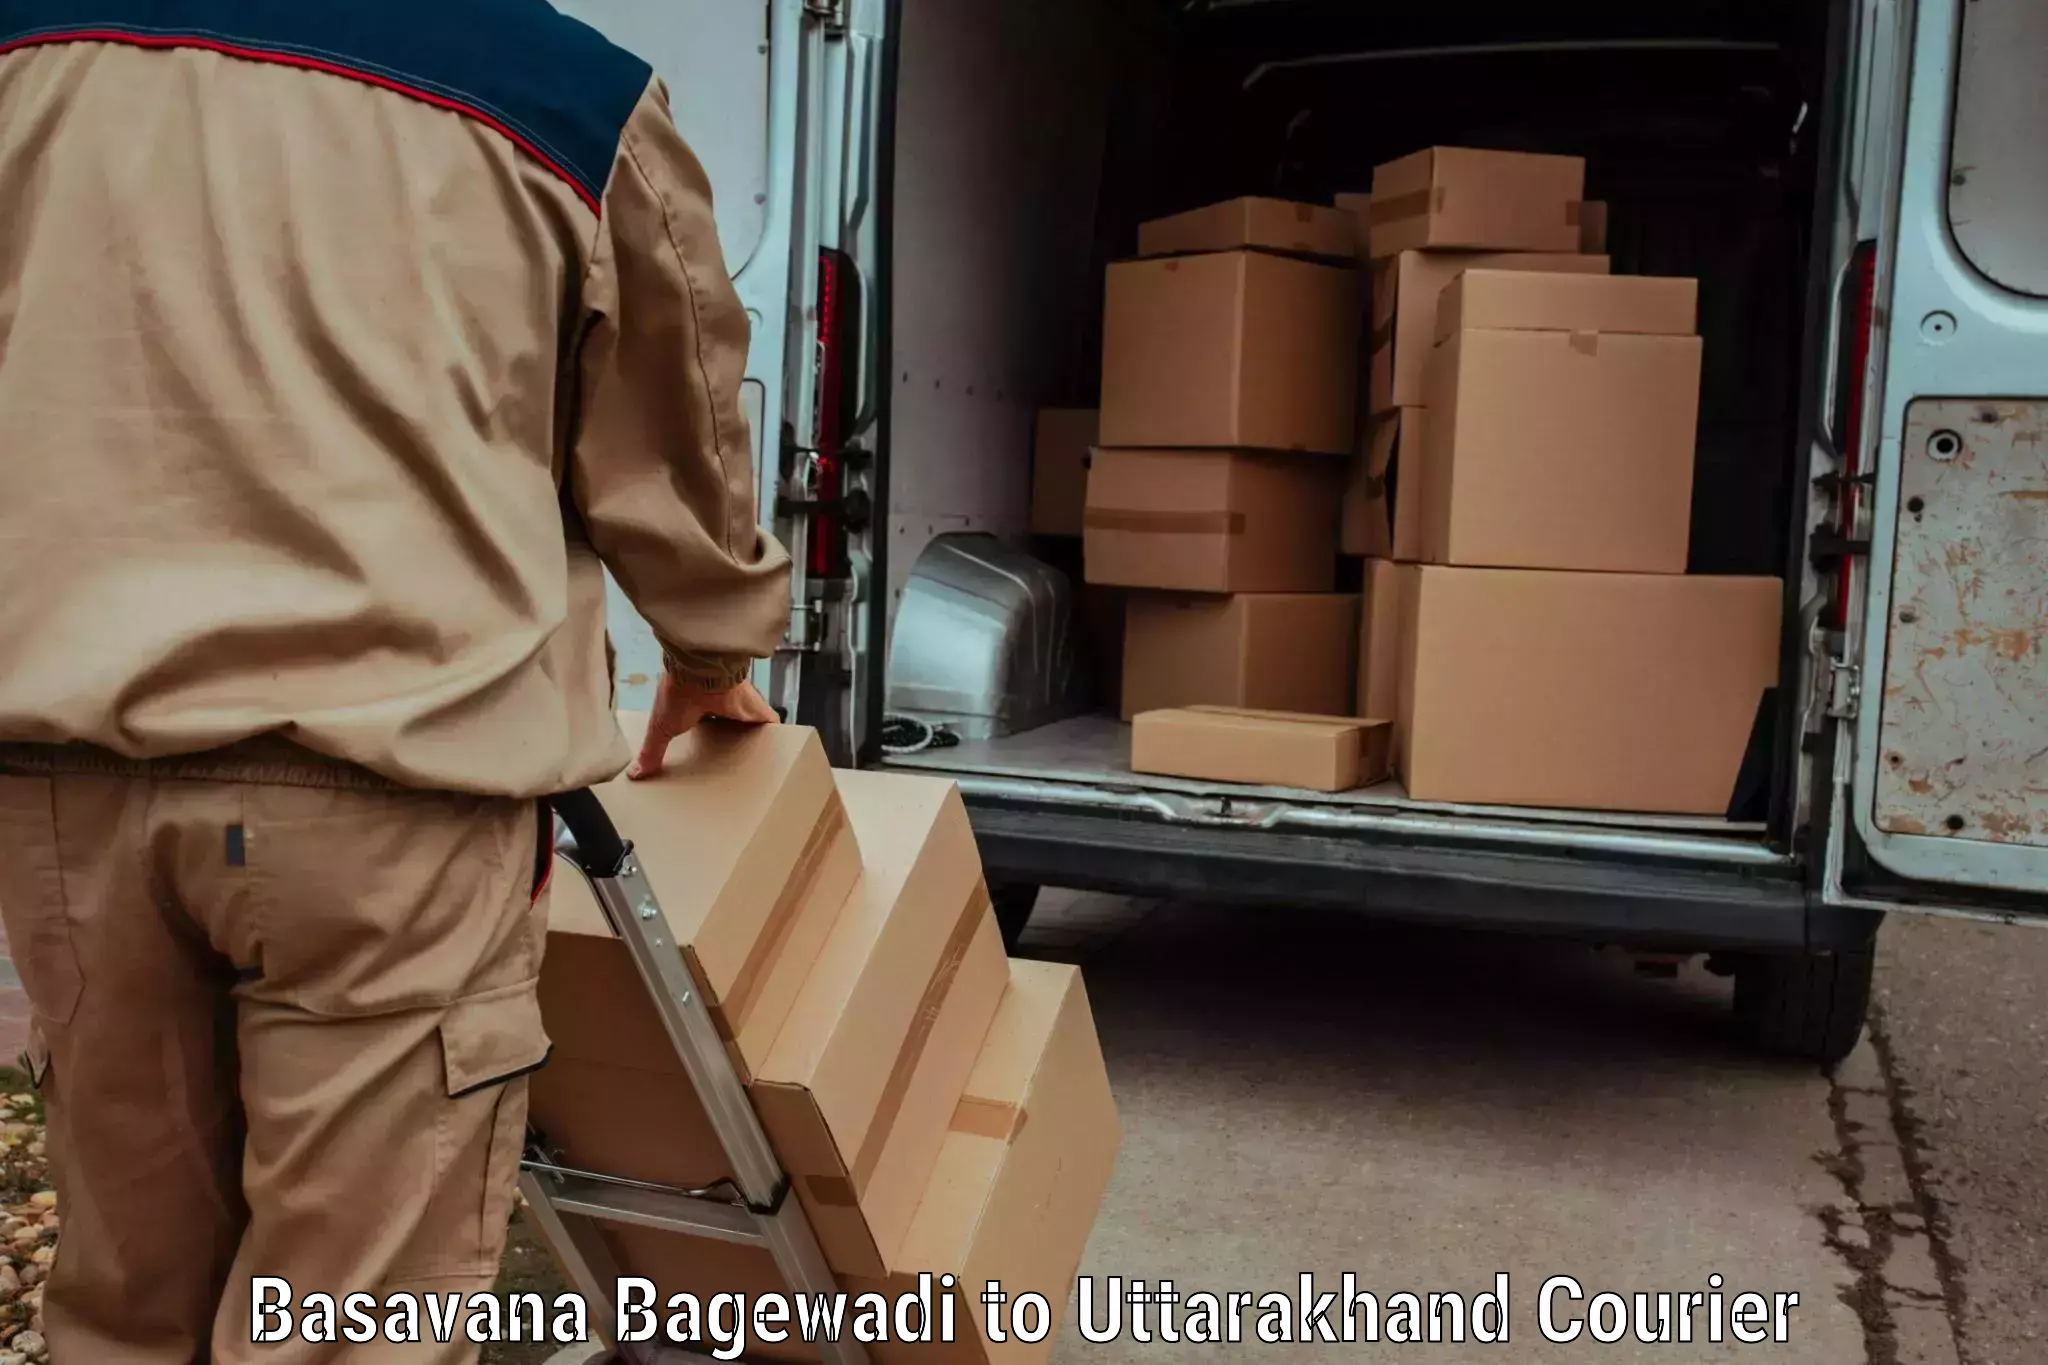 Luggage delivery system Basavana Bagewadi to Uttarakhand